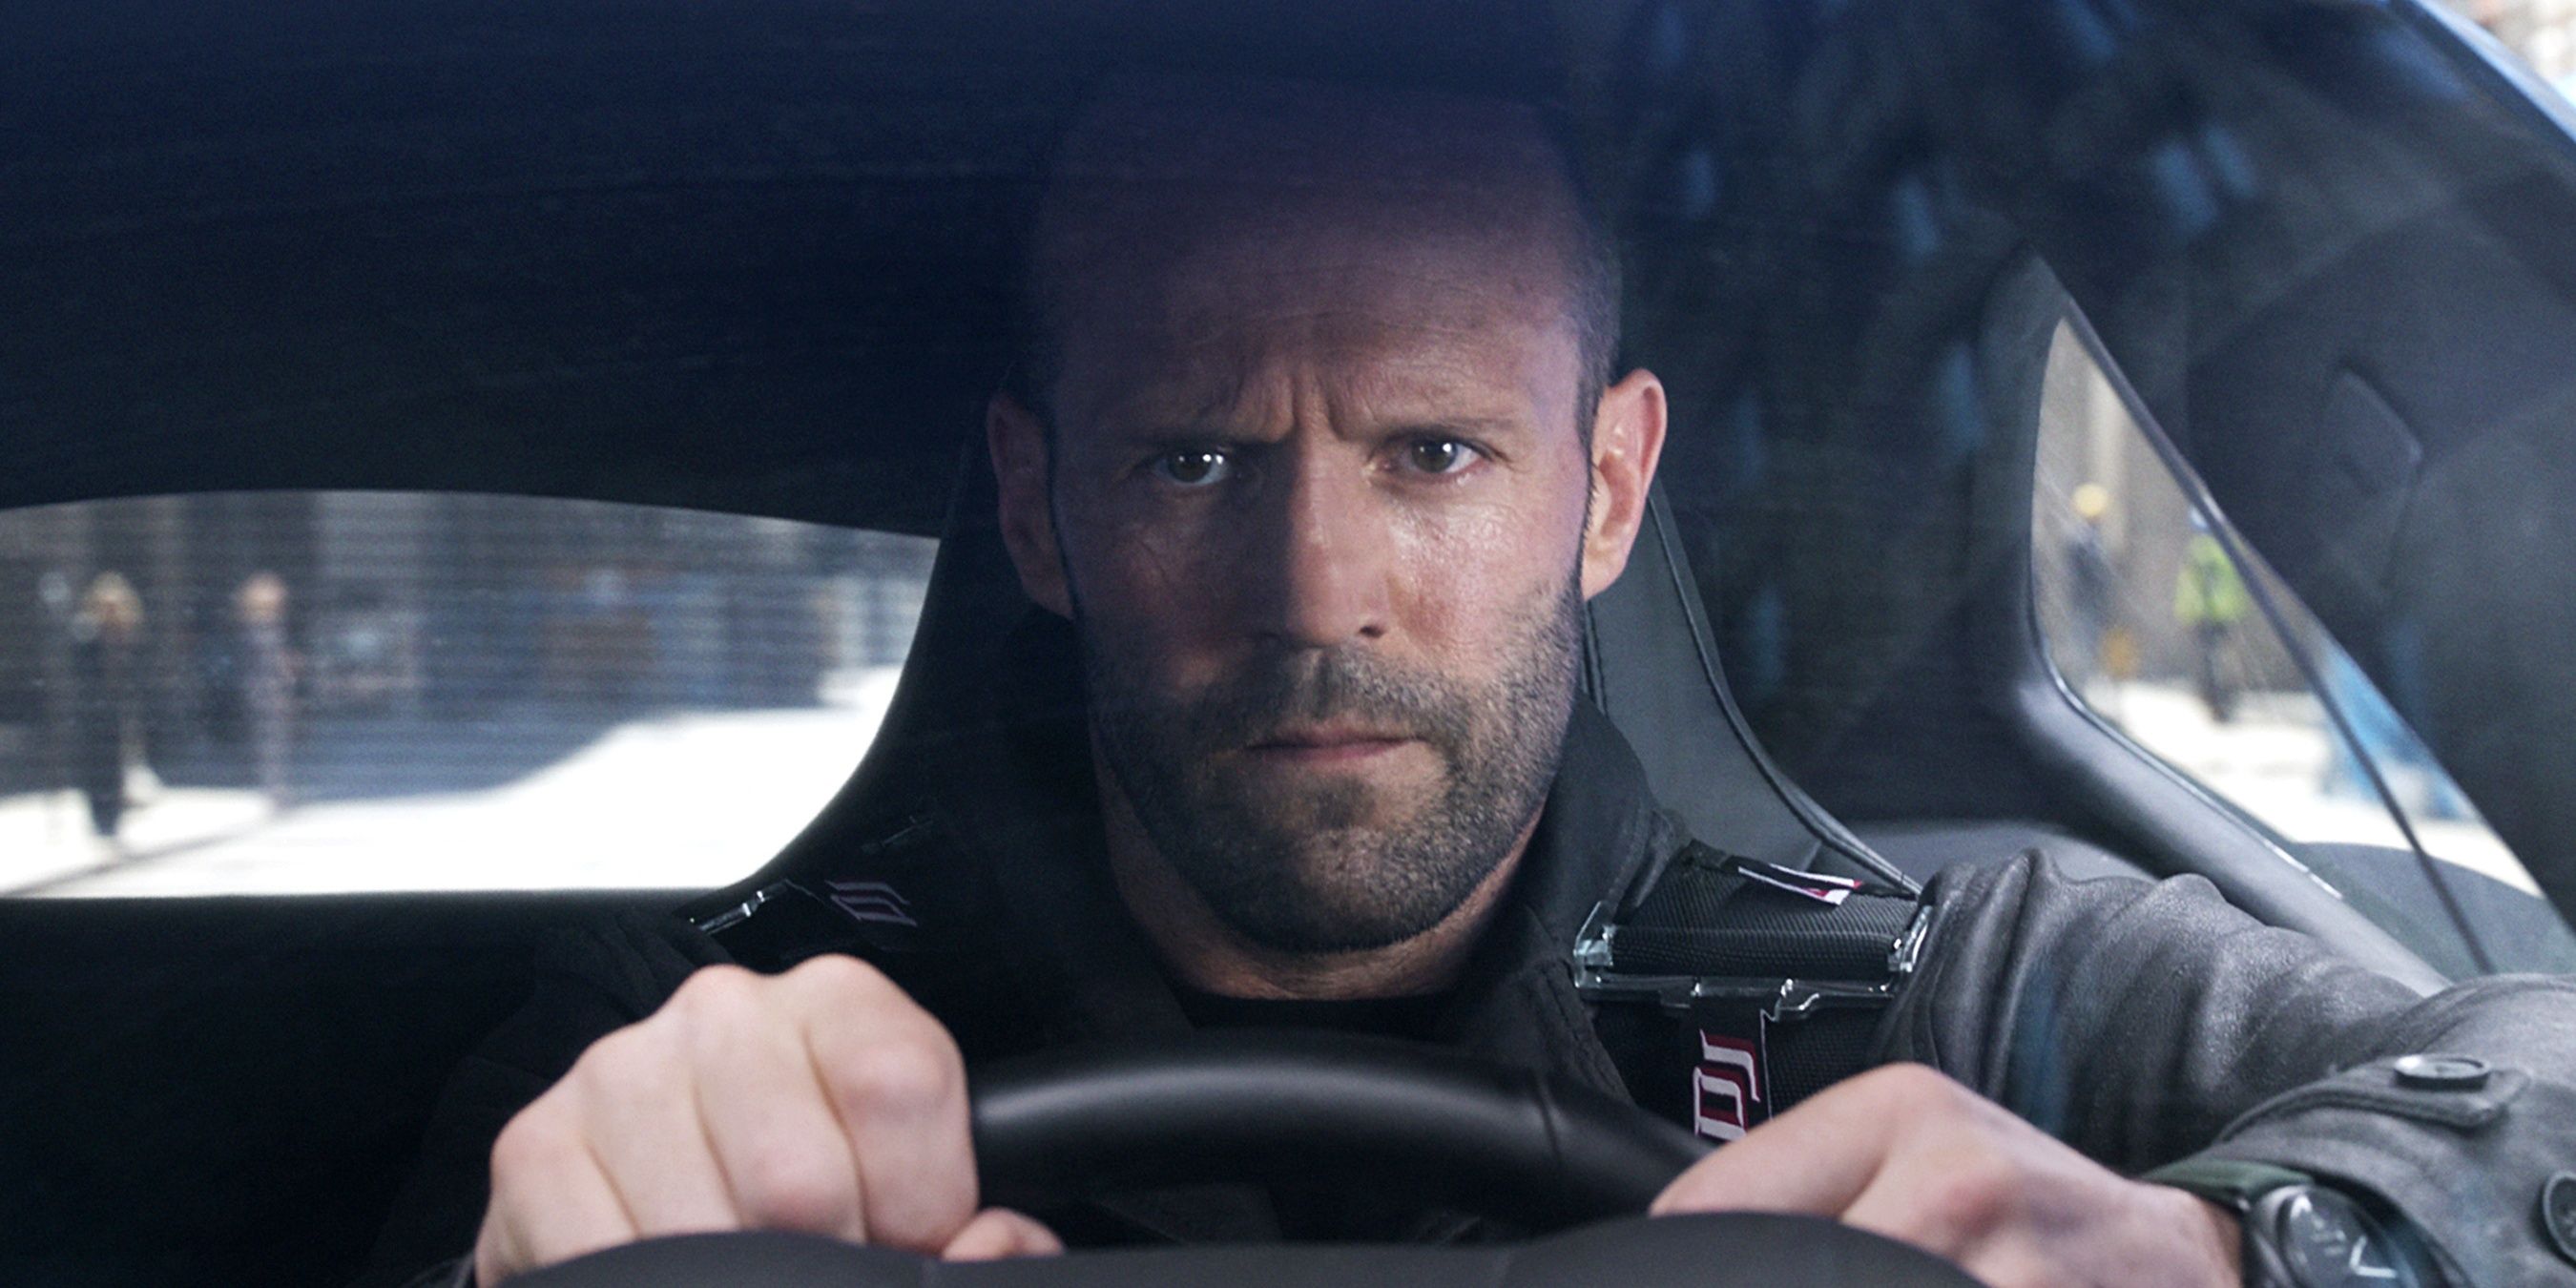 Jason Statham as Deckard Shaw driving a car